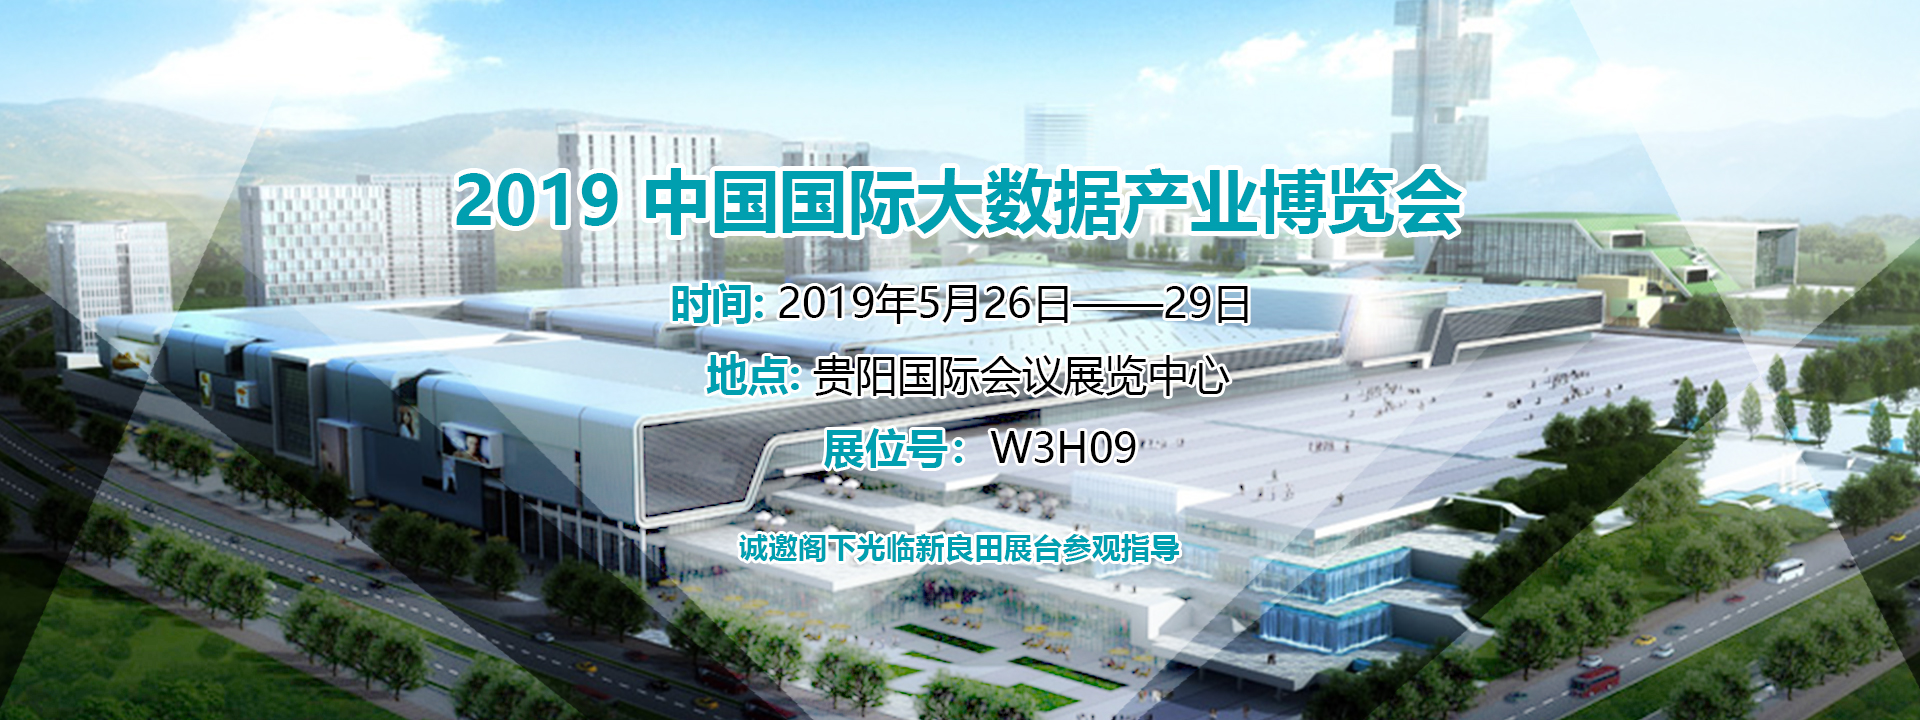 2019中国国际大数据产业博览会数博会邀请函